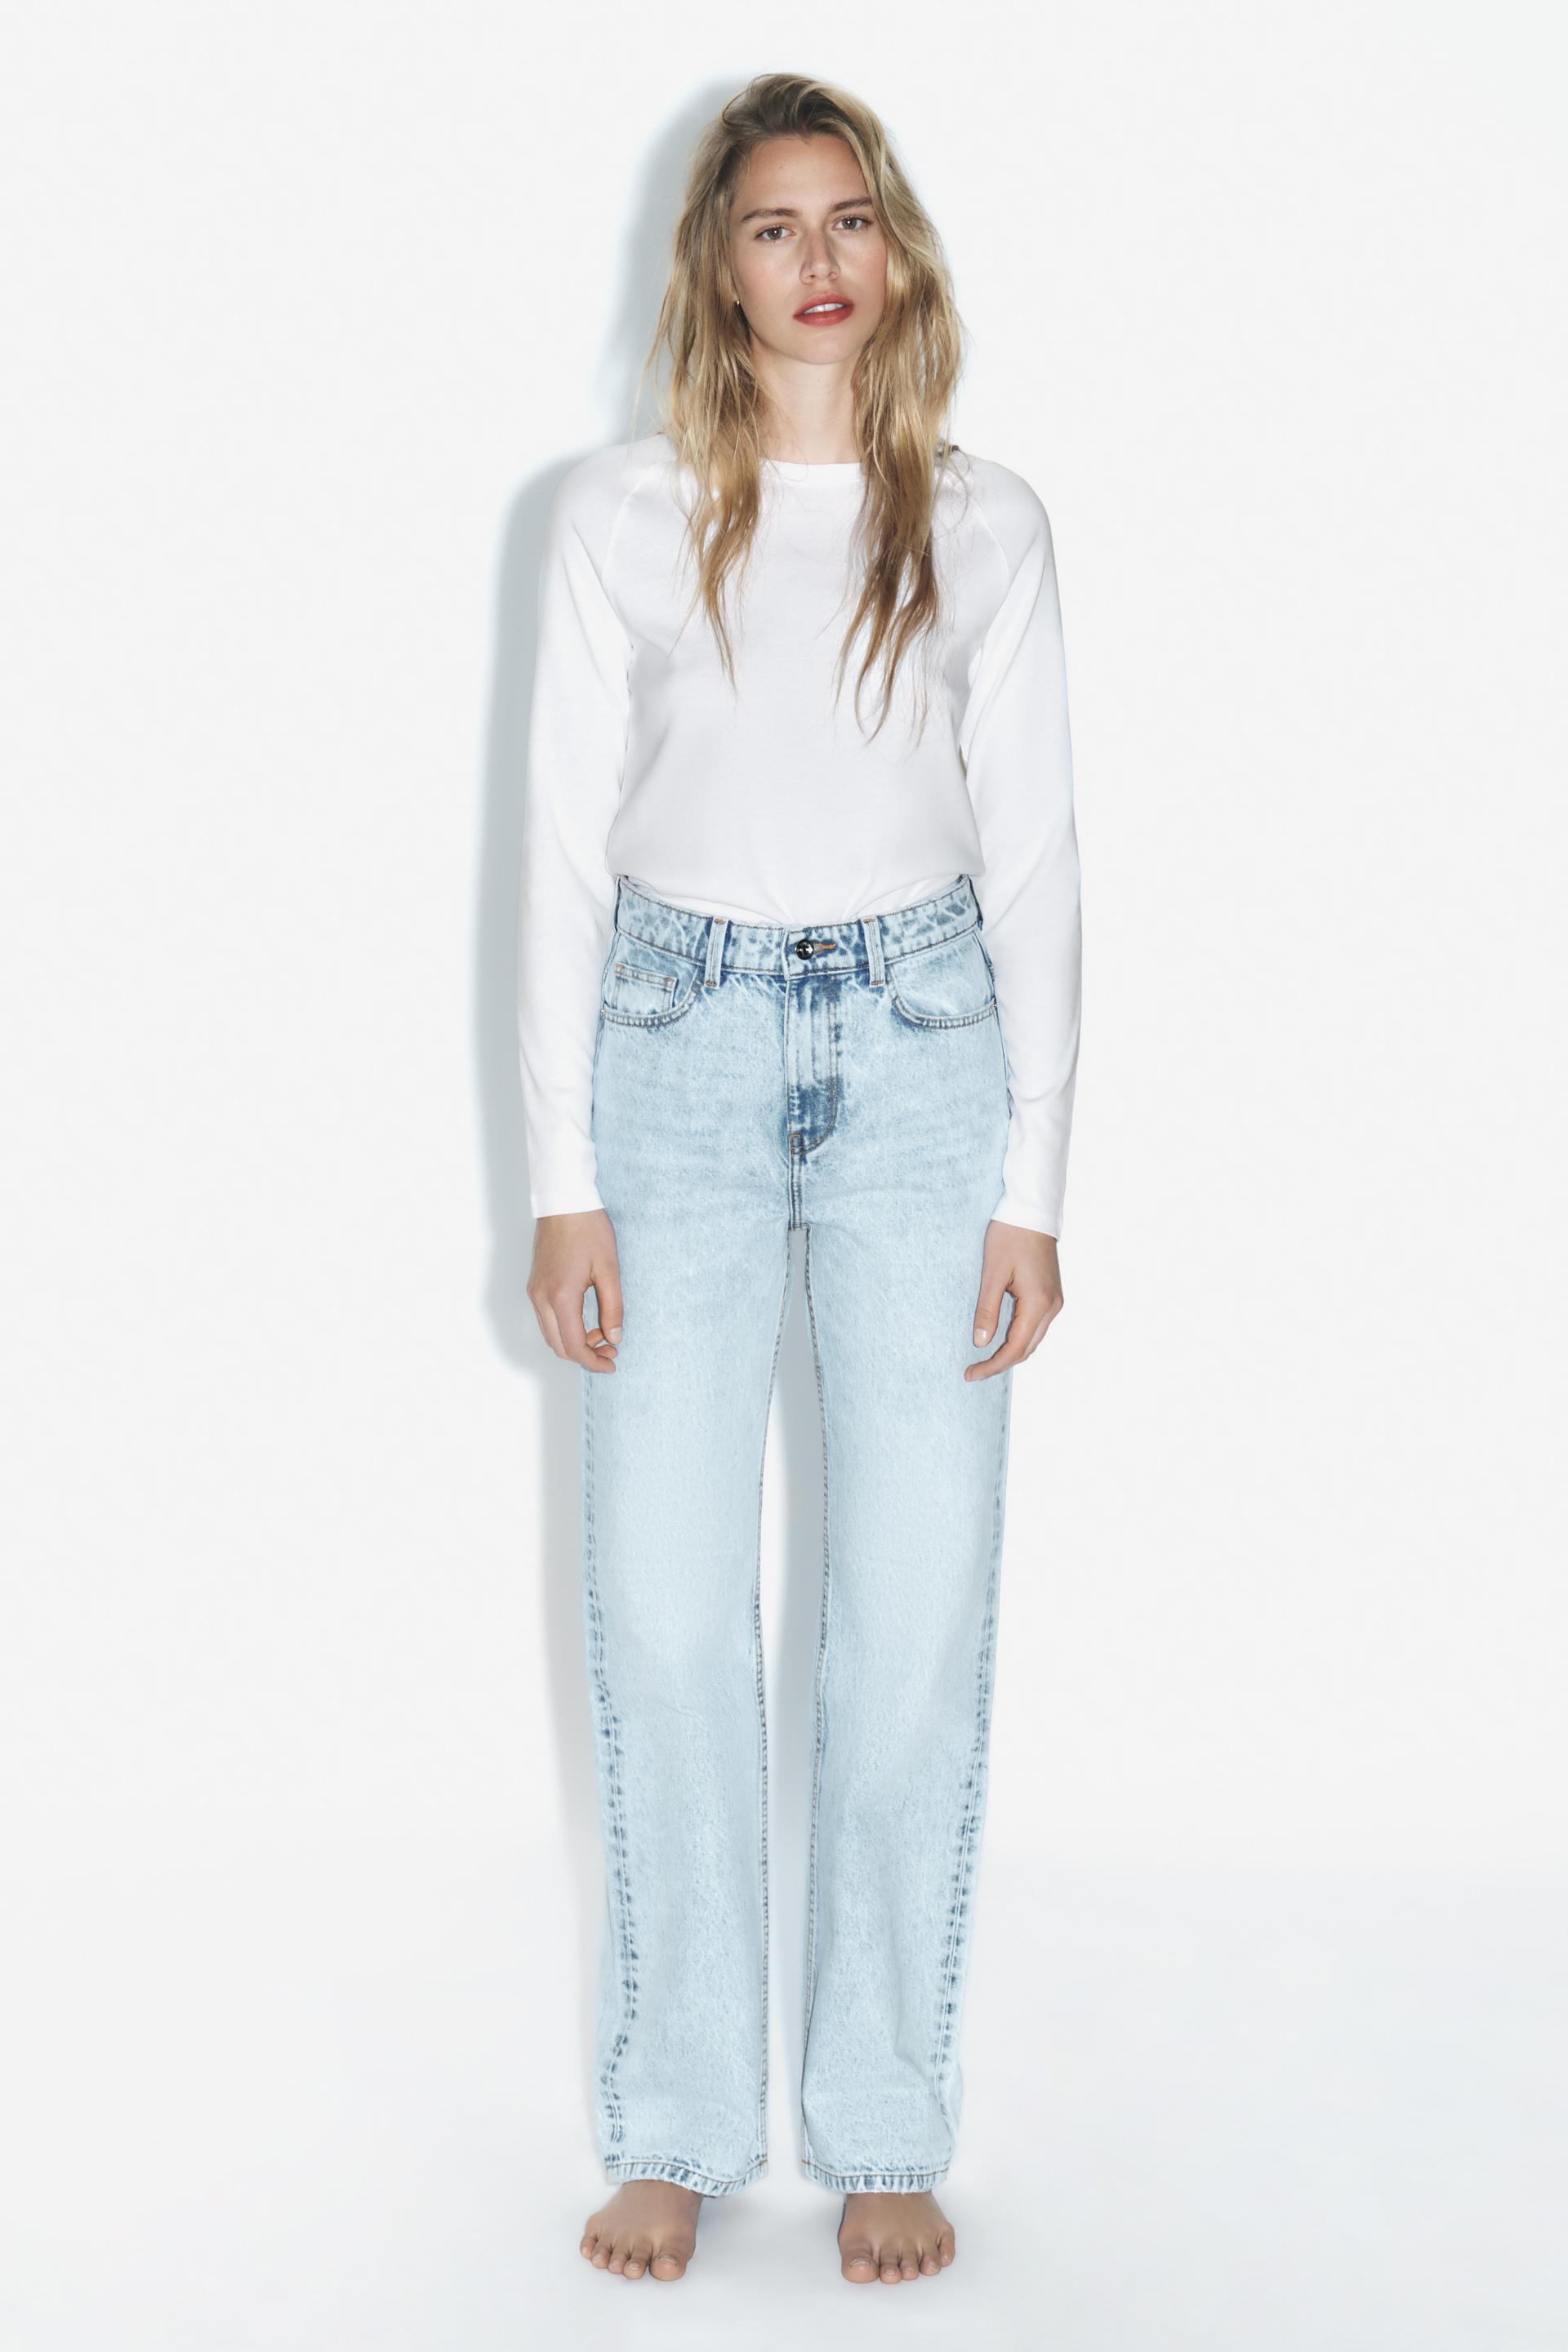 Zara Womens Baggy Jeans US 0 EU 32 High Waisted Straight Blue 5862/059 NWT